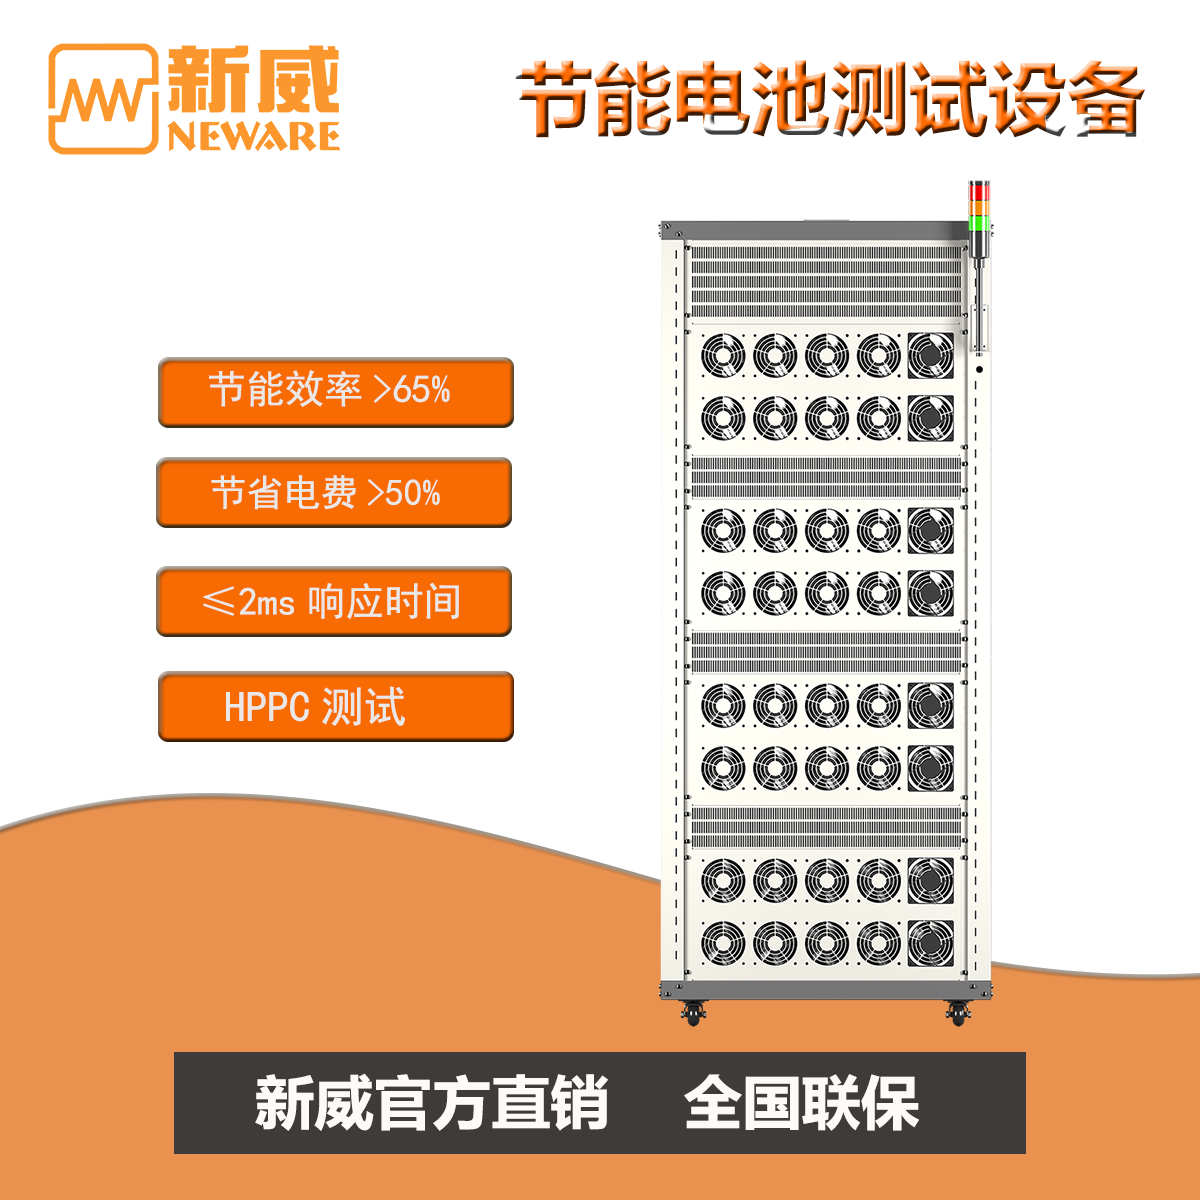 新威 HPPC检测 节能电池检测设备 节省电费百分之50